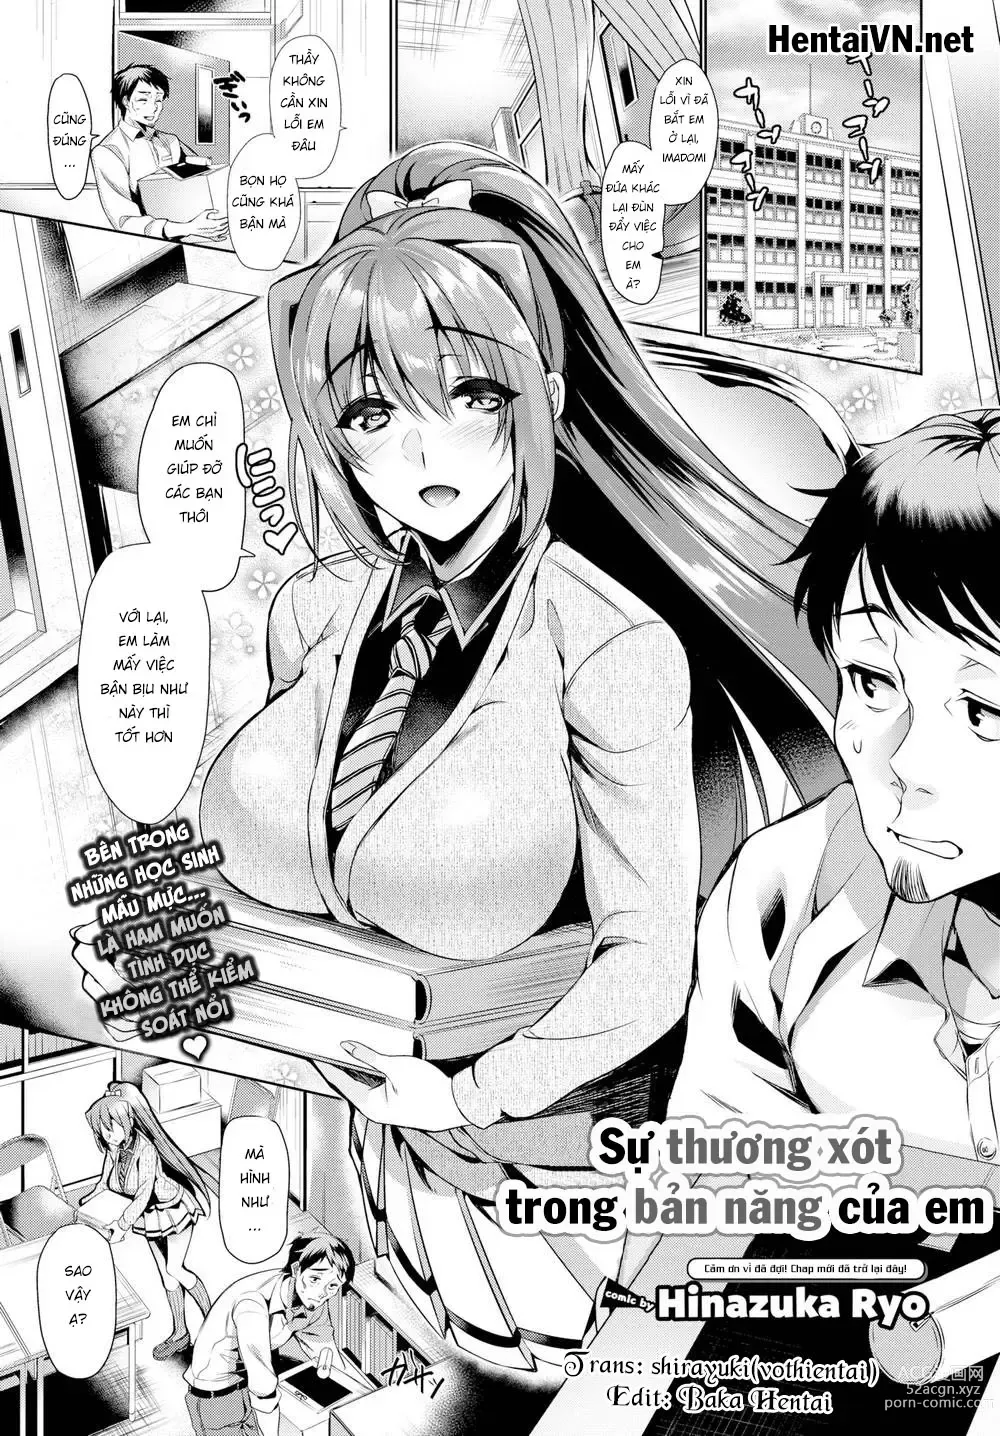 Page 1 of doujinshi Xin hãy chú ý đến tình cảm của em đi, Sensei!